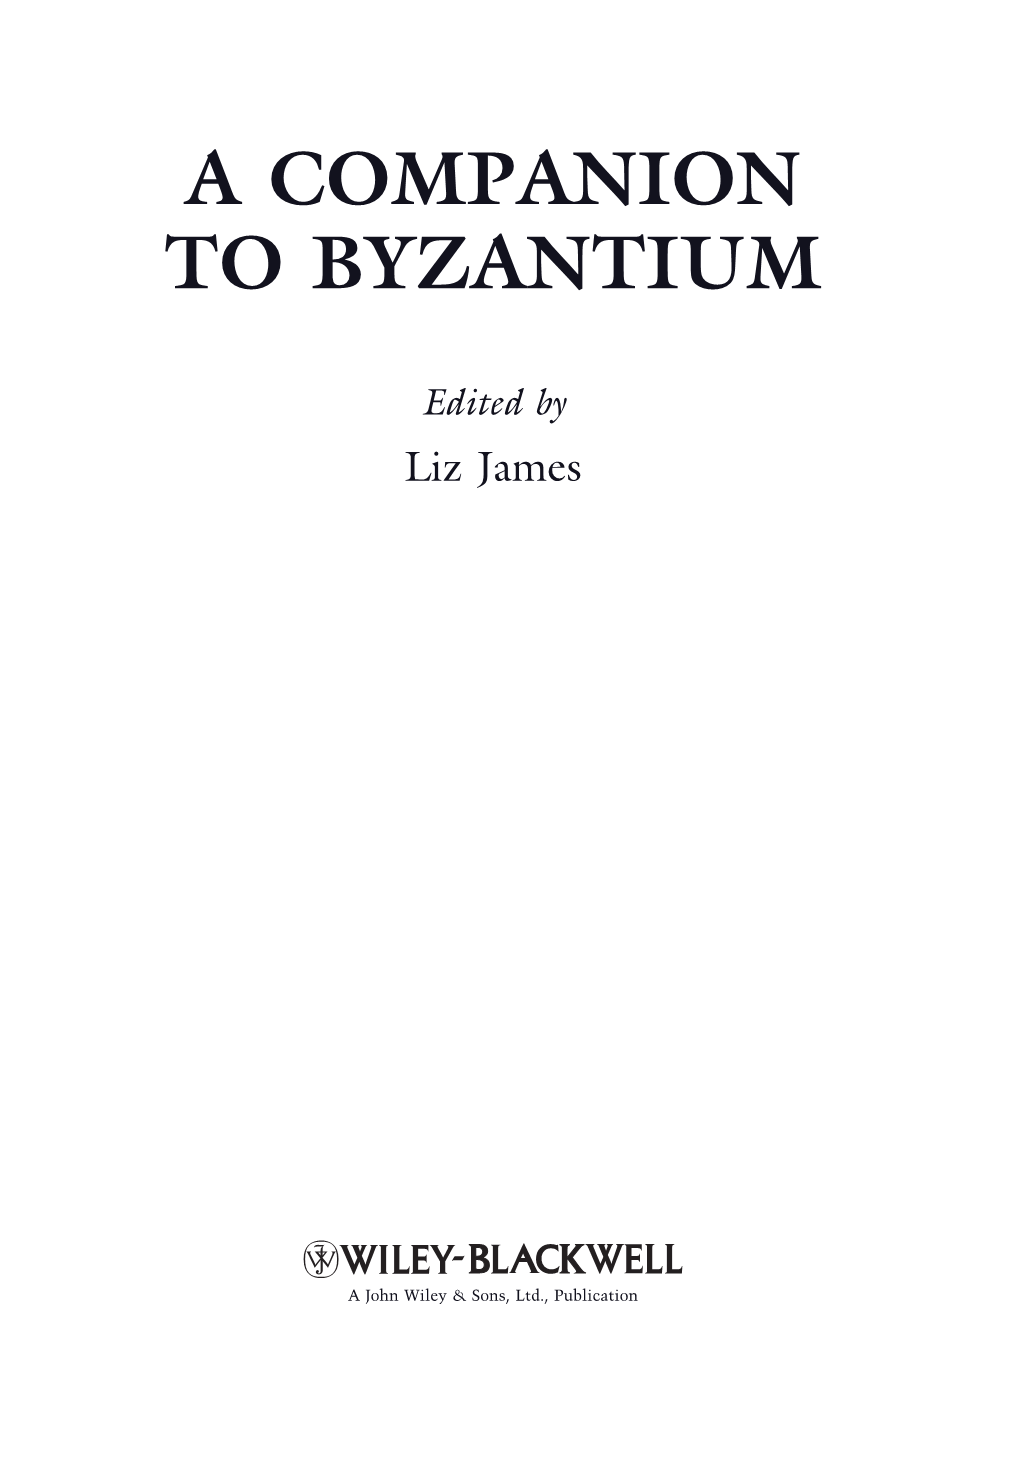 A Companion to Byzantium